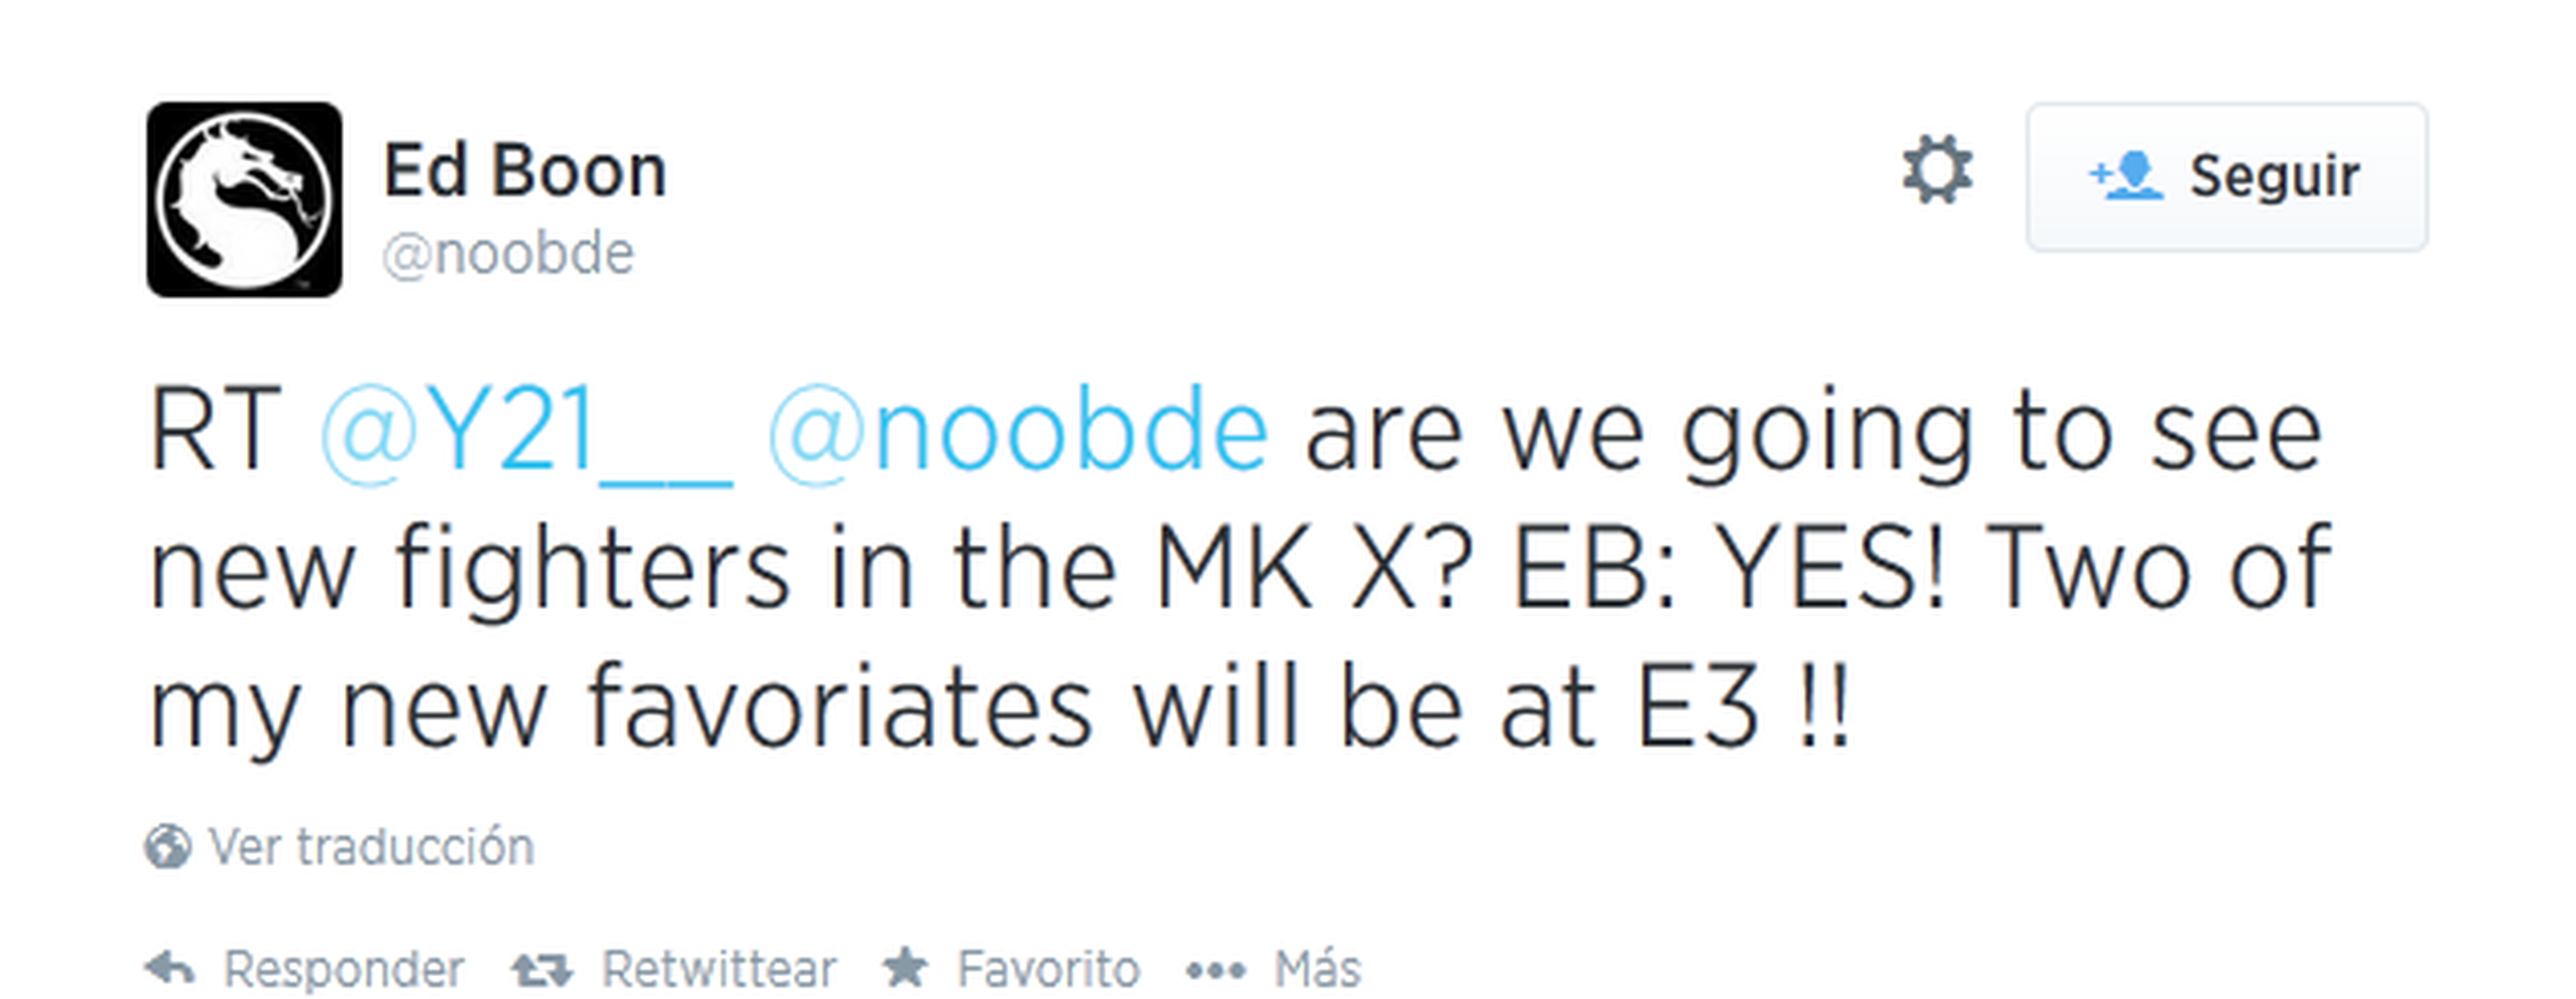 E3 2014: Se presentarán dos nuevos luchadores para Mortal Kombat X